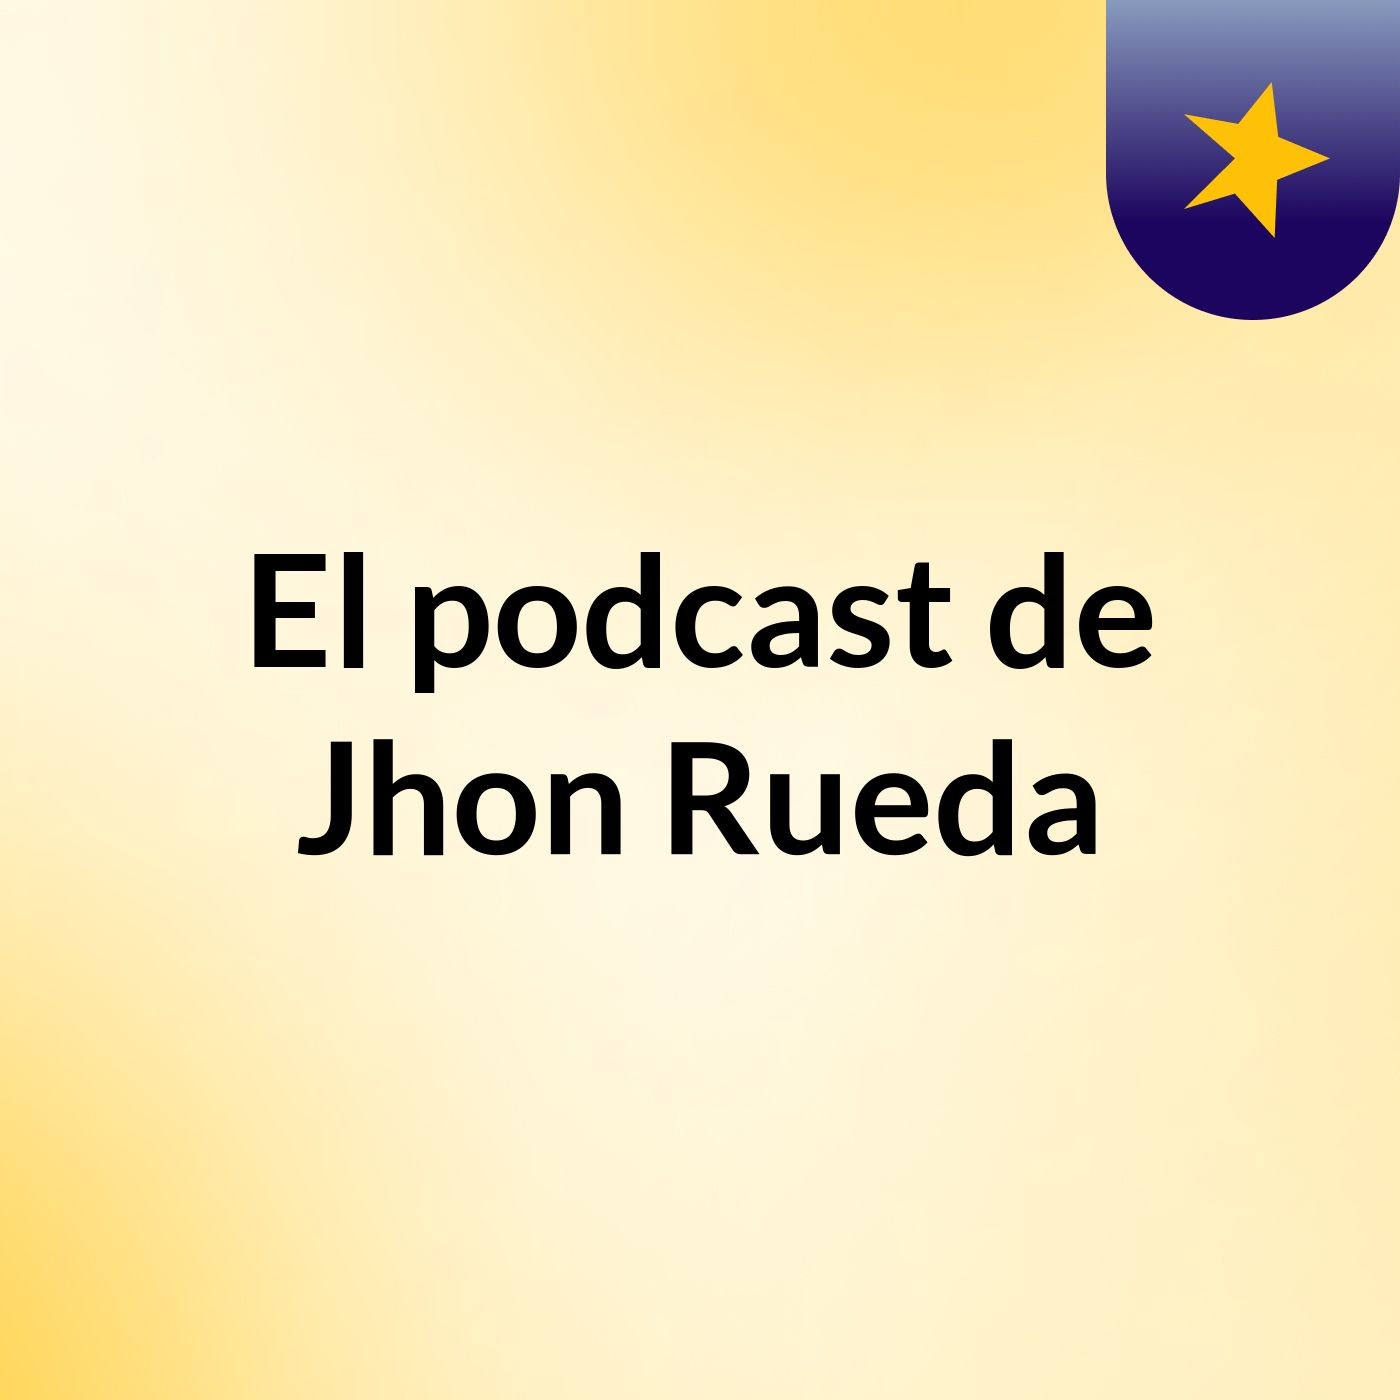 Viernes - El podcast de Jhon Rueda